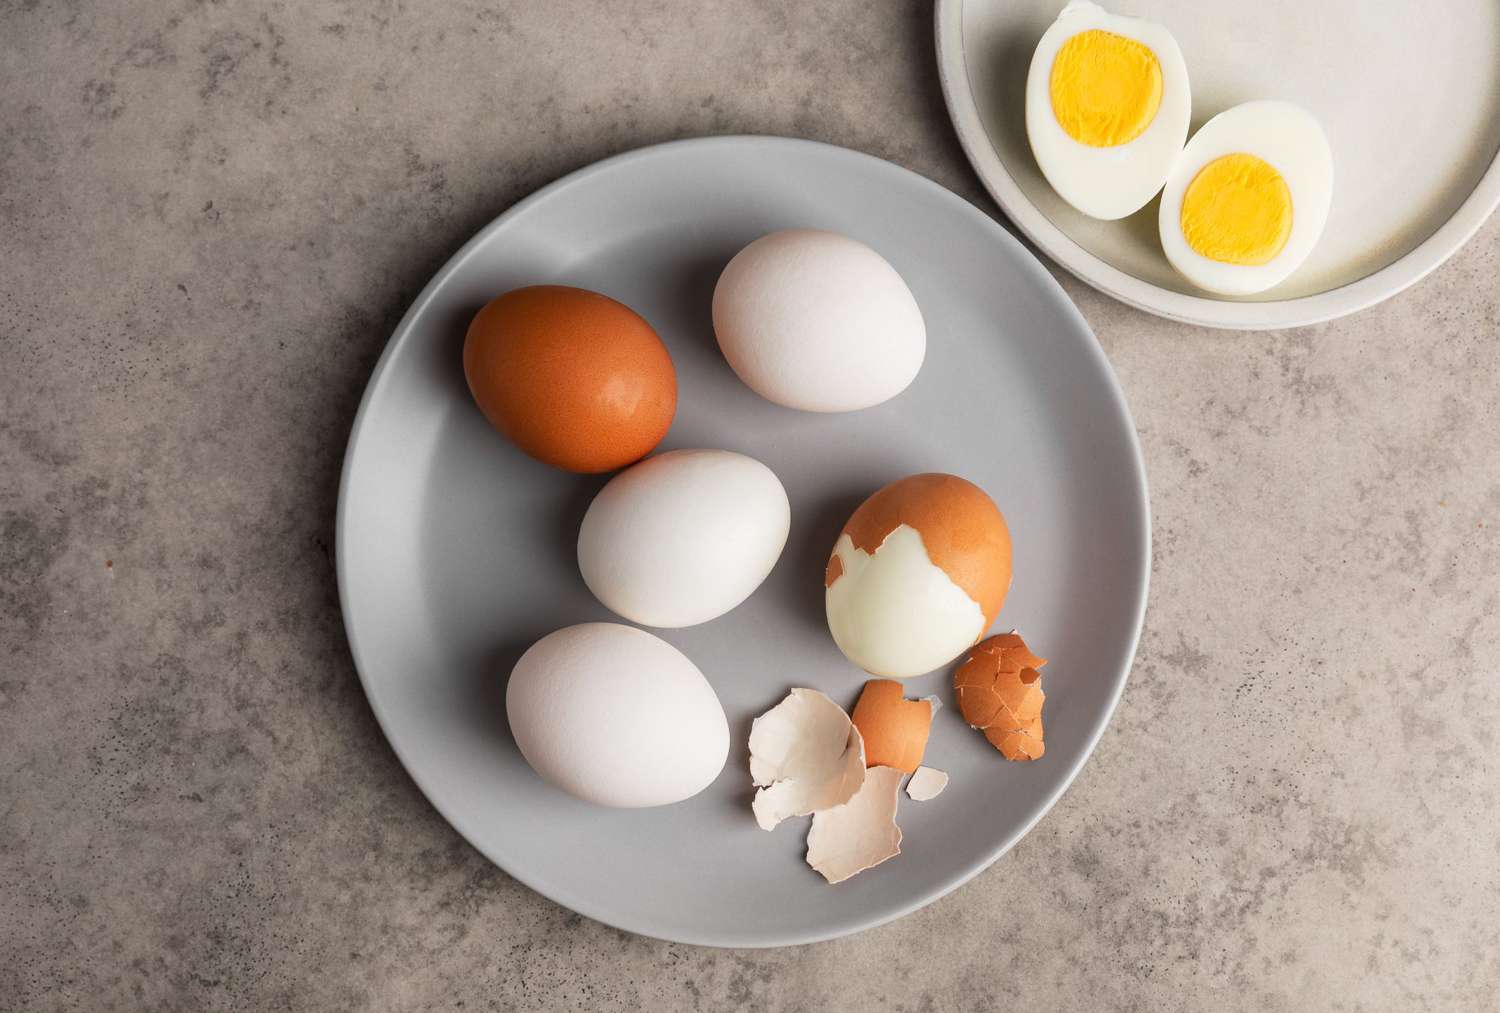 آیا مصرف تخم مرغ در بیماران قلبی مجاز است؟